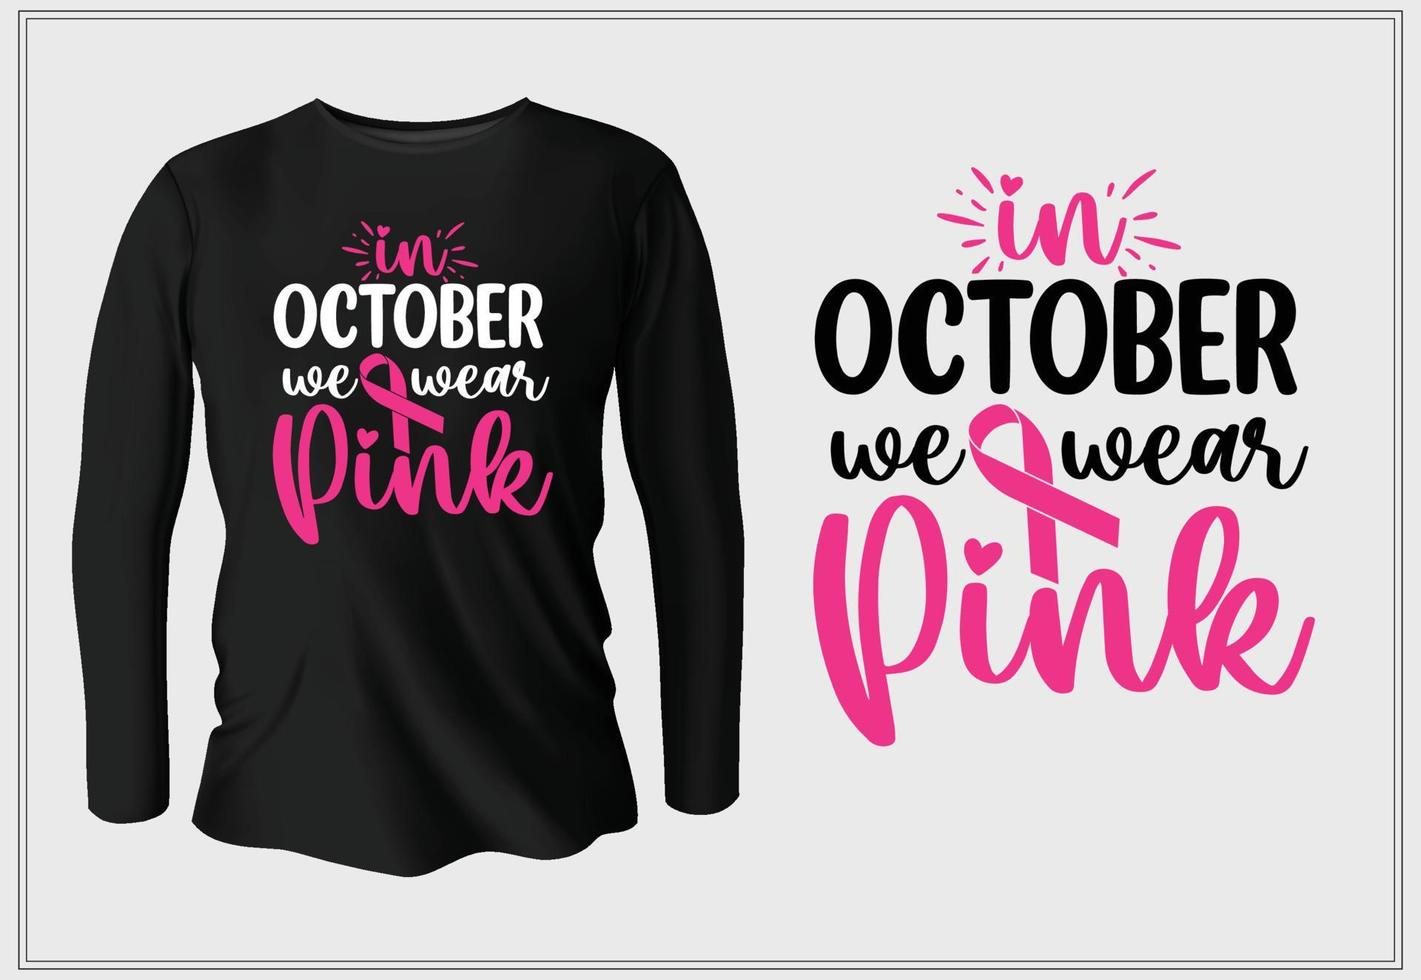 In October we wear pink vector